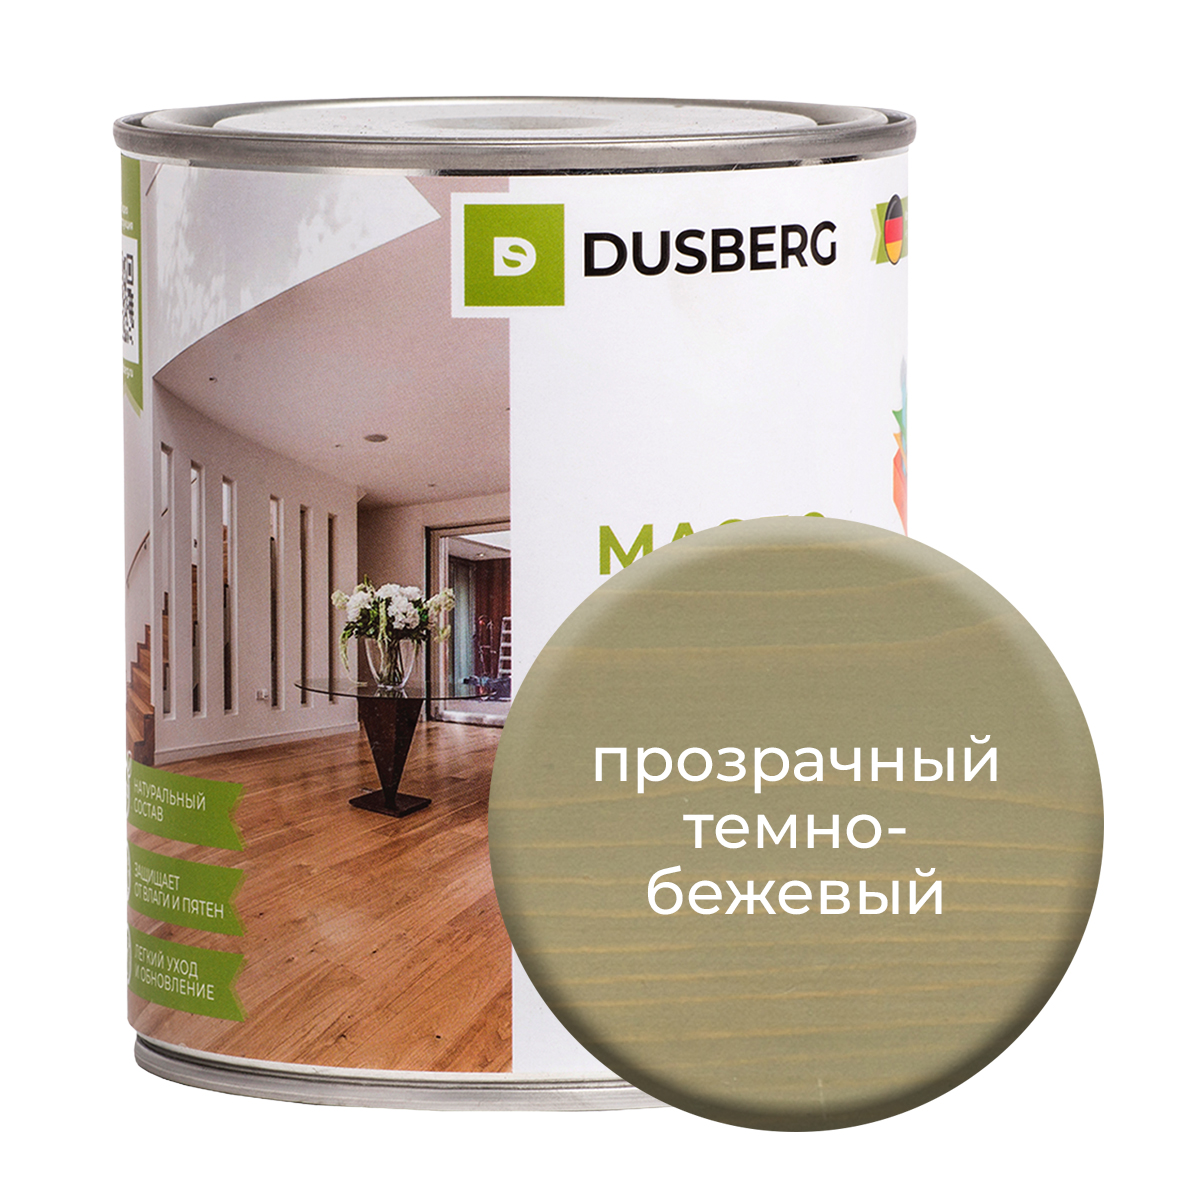 Масло Dusberg для стен на бесцветной основе, 750 мл Прозрачный темно-бежевый масло dusberg для стен на бесцветной основе 750 мл прозрачный светло зеленый